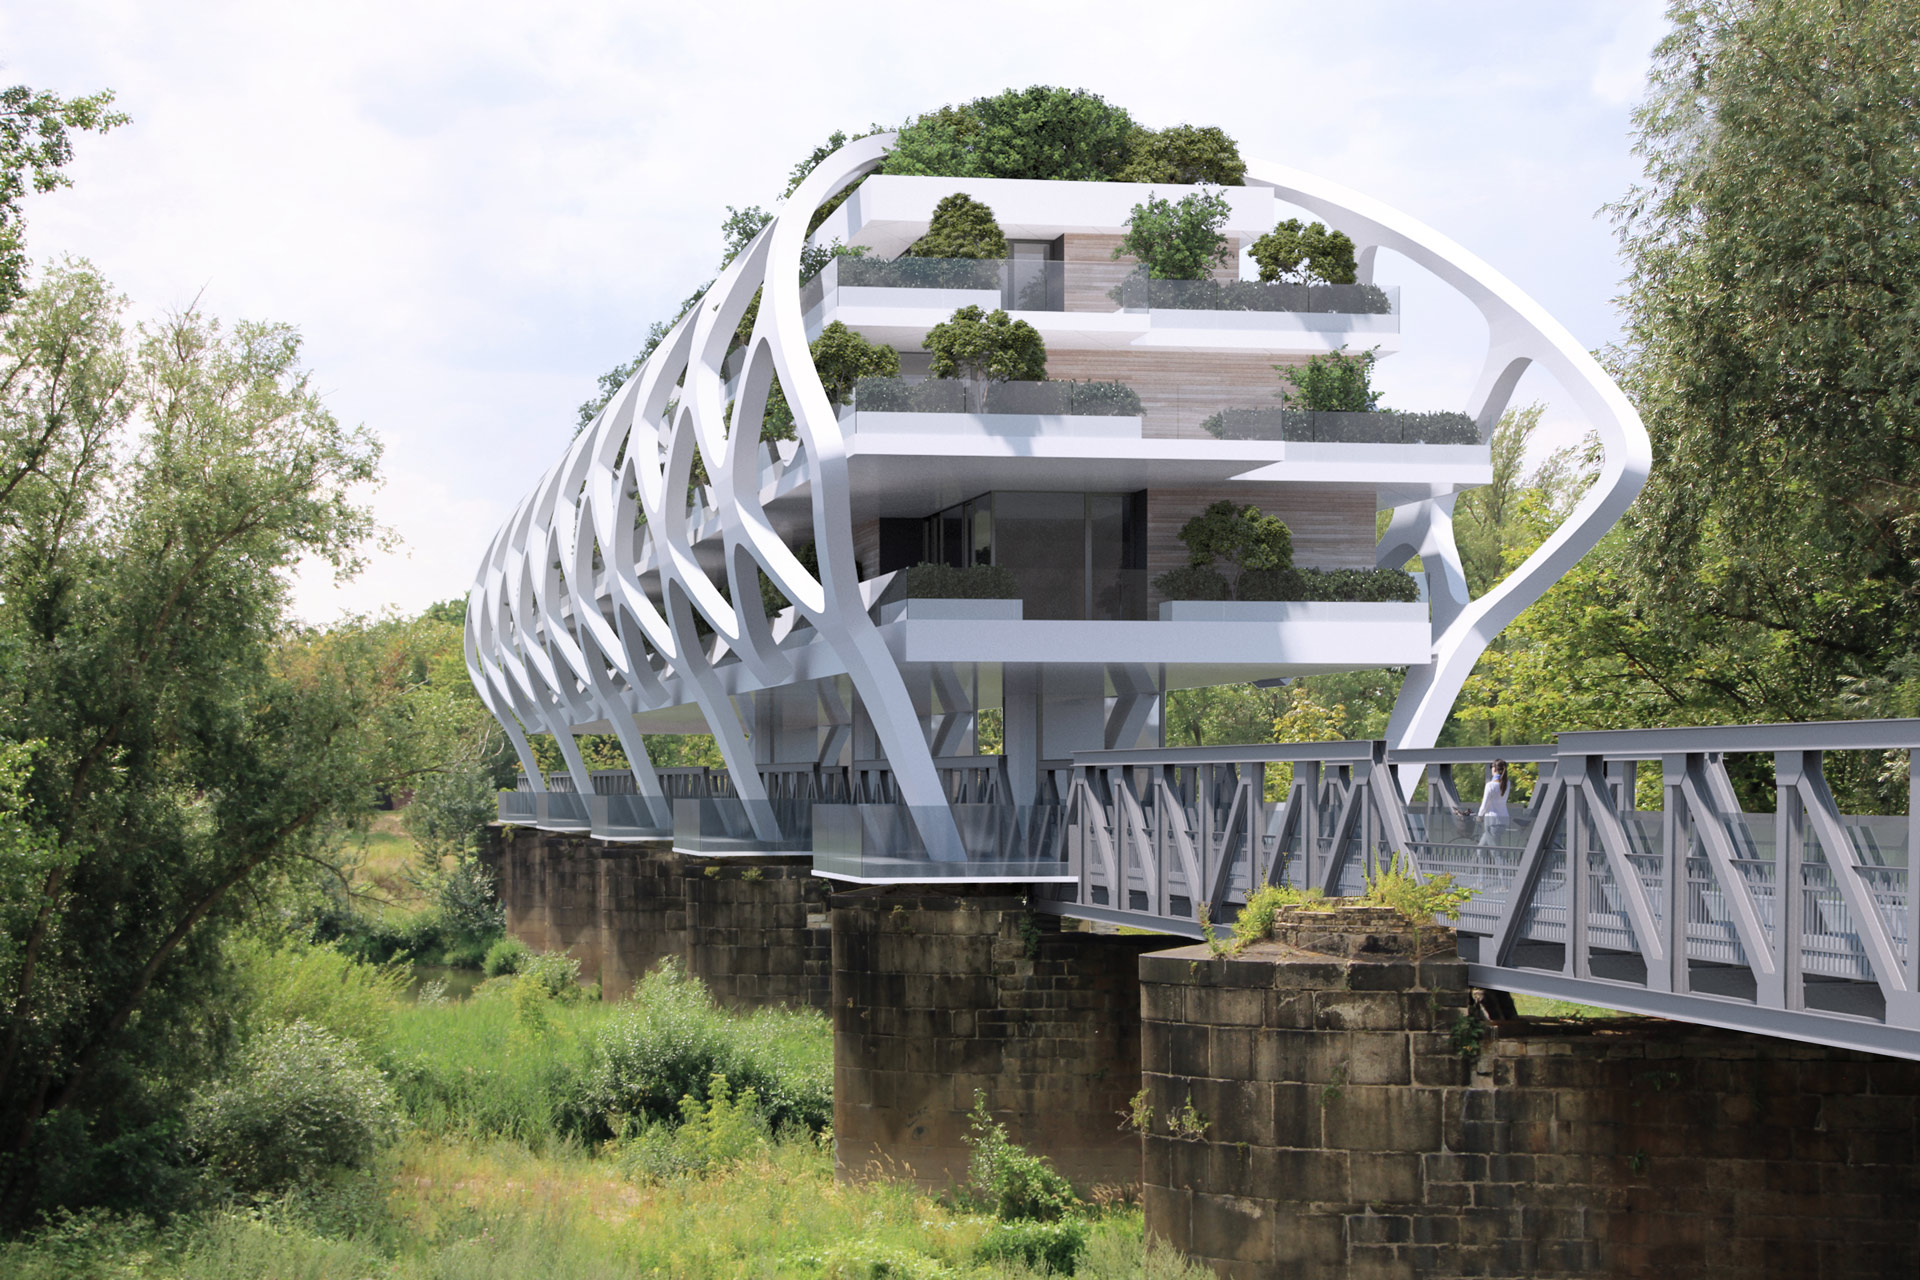 kanonenbahnbrücke, wohnen ueber der elbe, fassade, giebel, sattler+täger, architekten gmbh